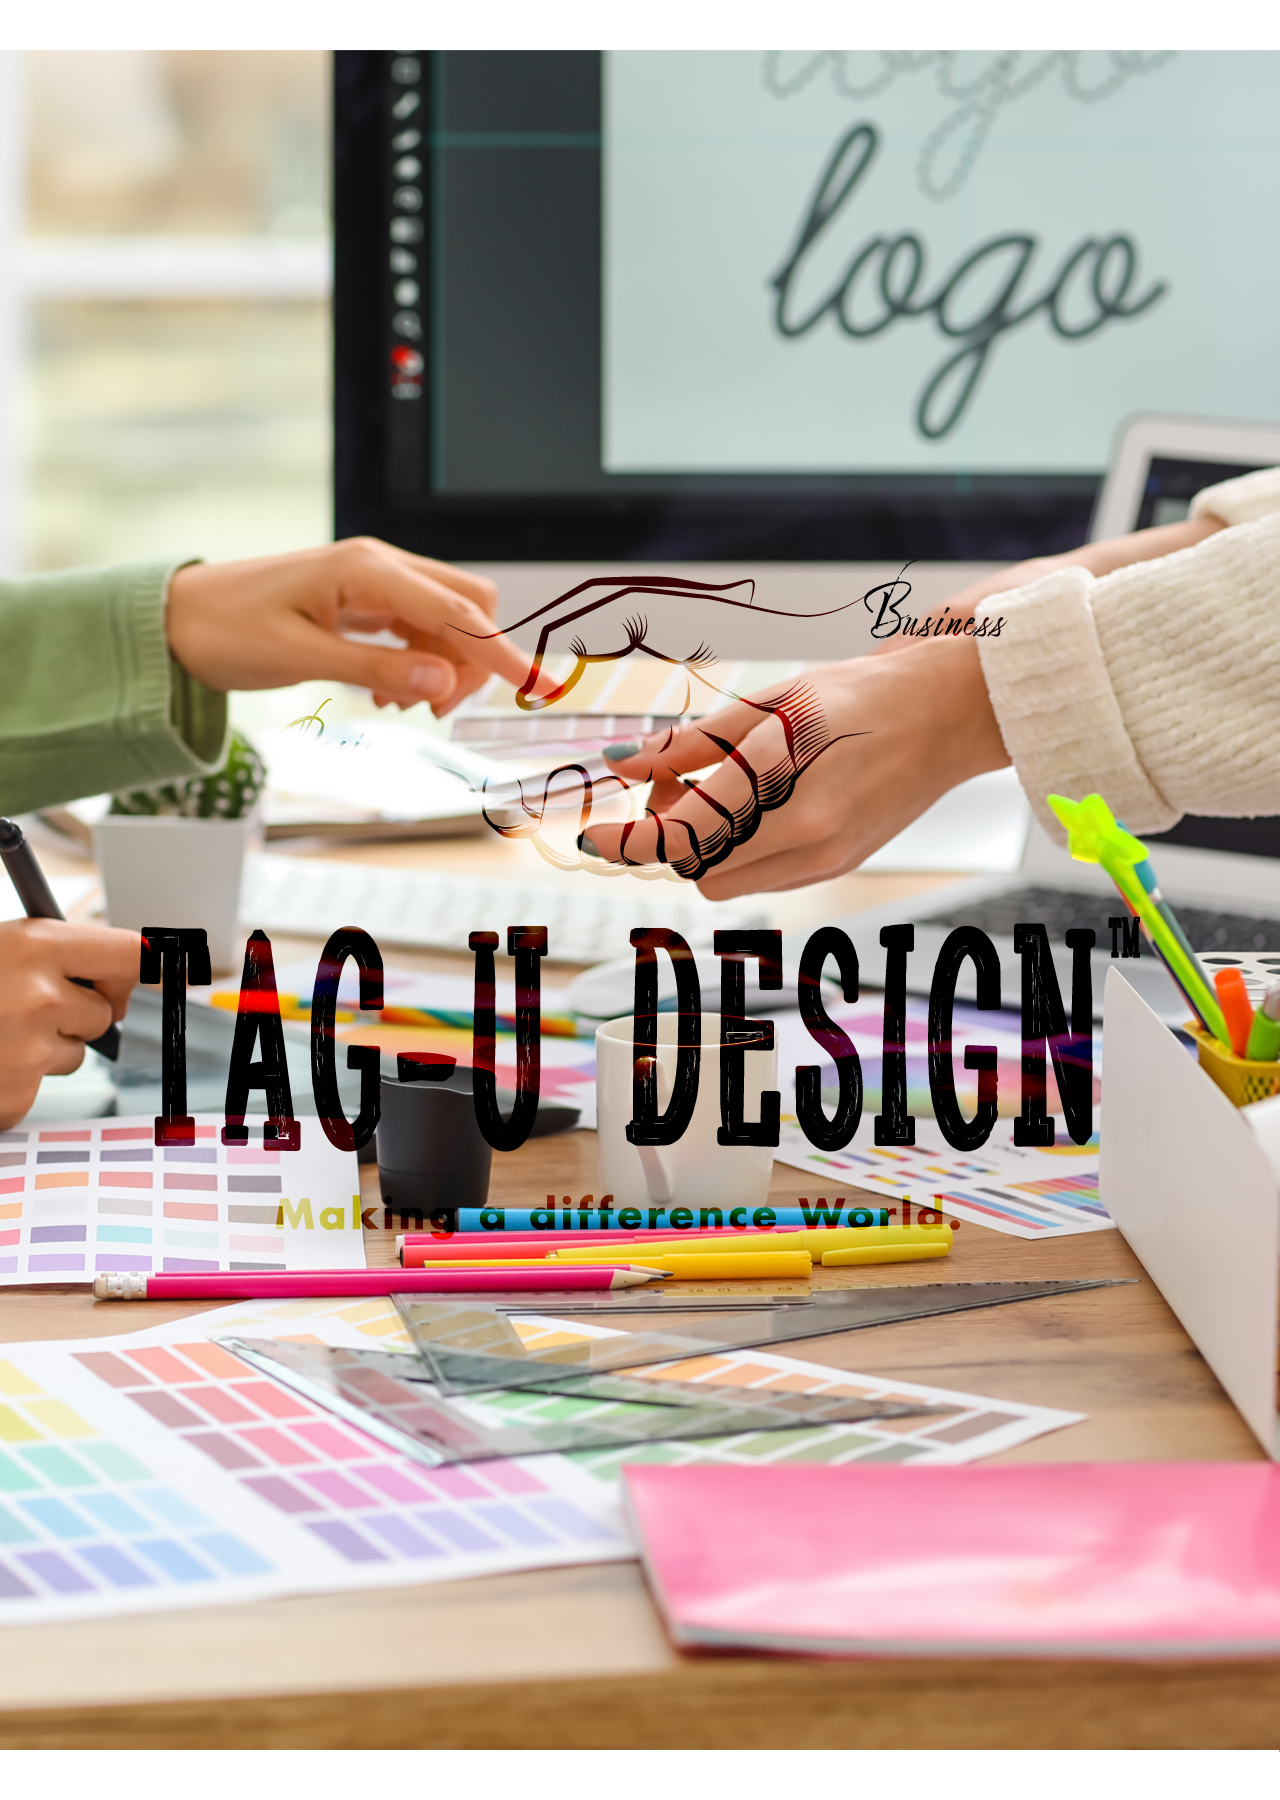 タッグデザイン,グラフィックデザイン,パッケージデザイン,エディトリアルデザイン,webデザイン,ブランディング,ロゴ,タイポグラフィ,ワークショップ,イベント企画運営